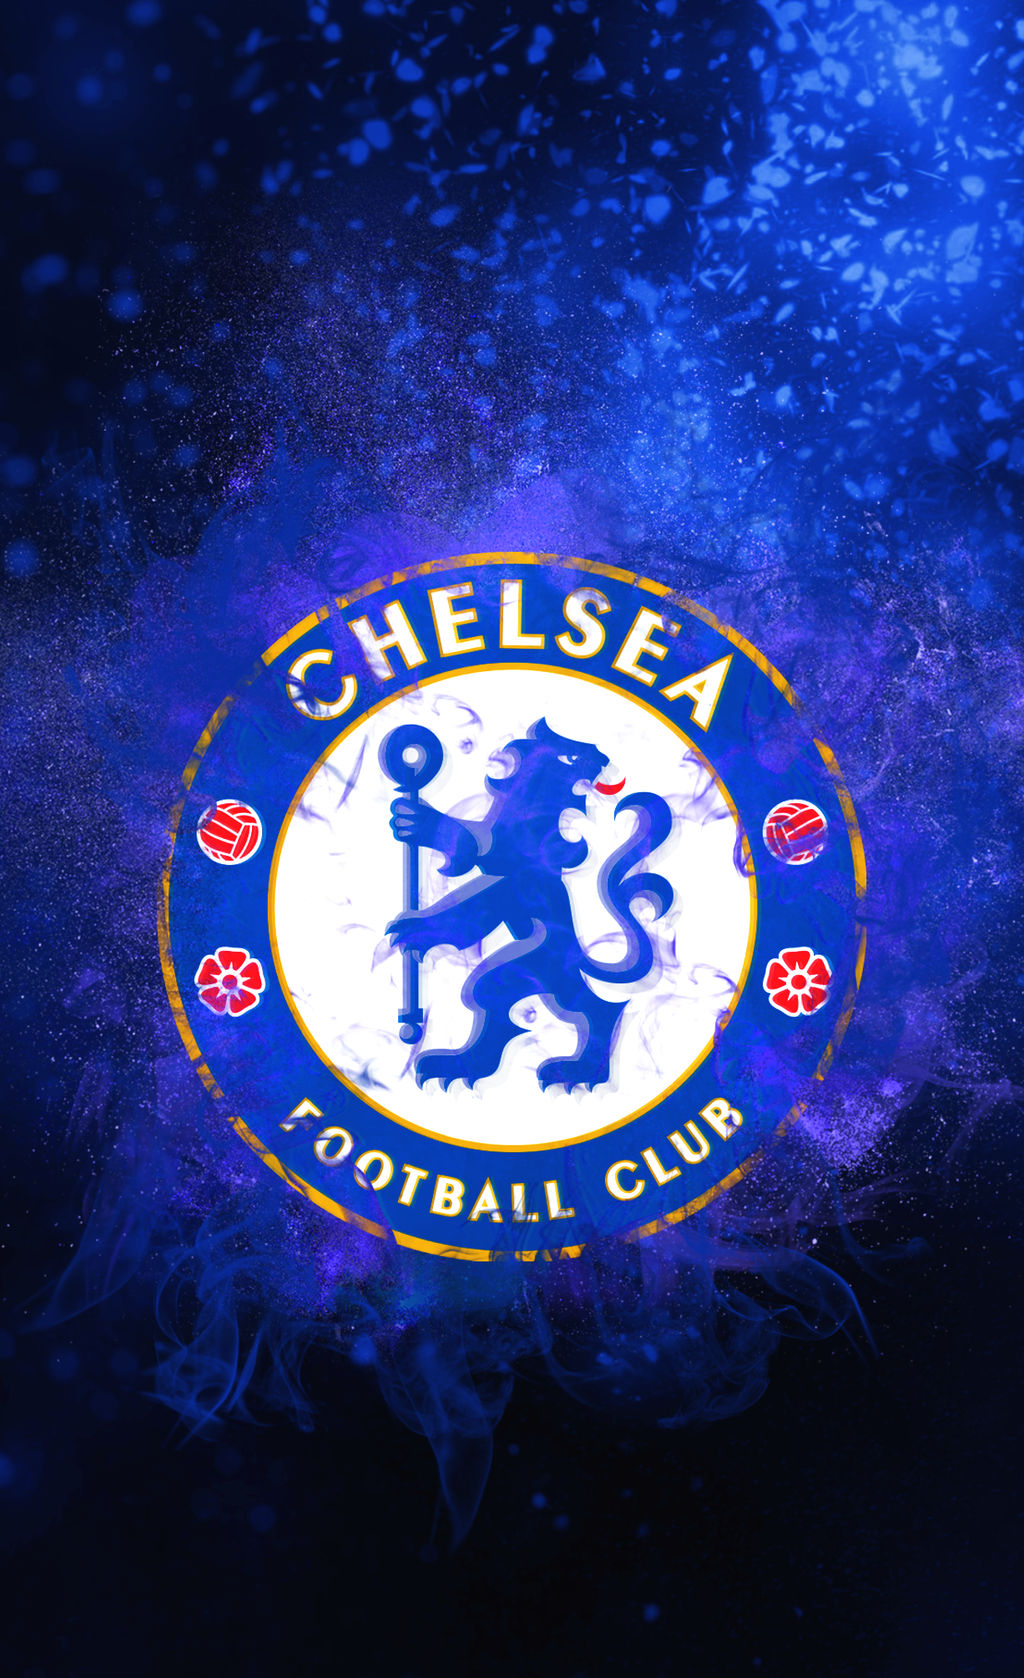 Chelsea FC logo mobile wallpaper by Adik1910 on DeviantArt